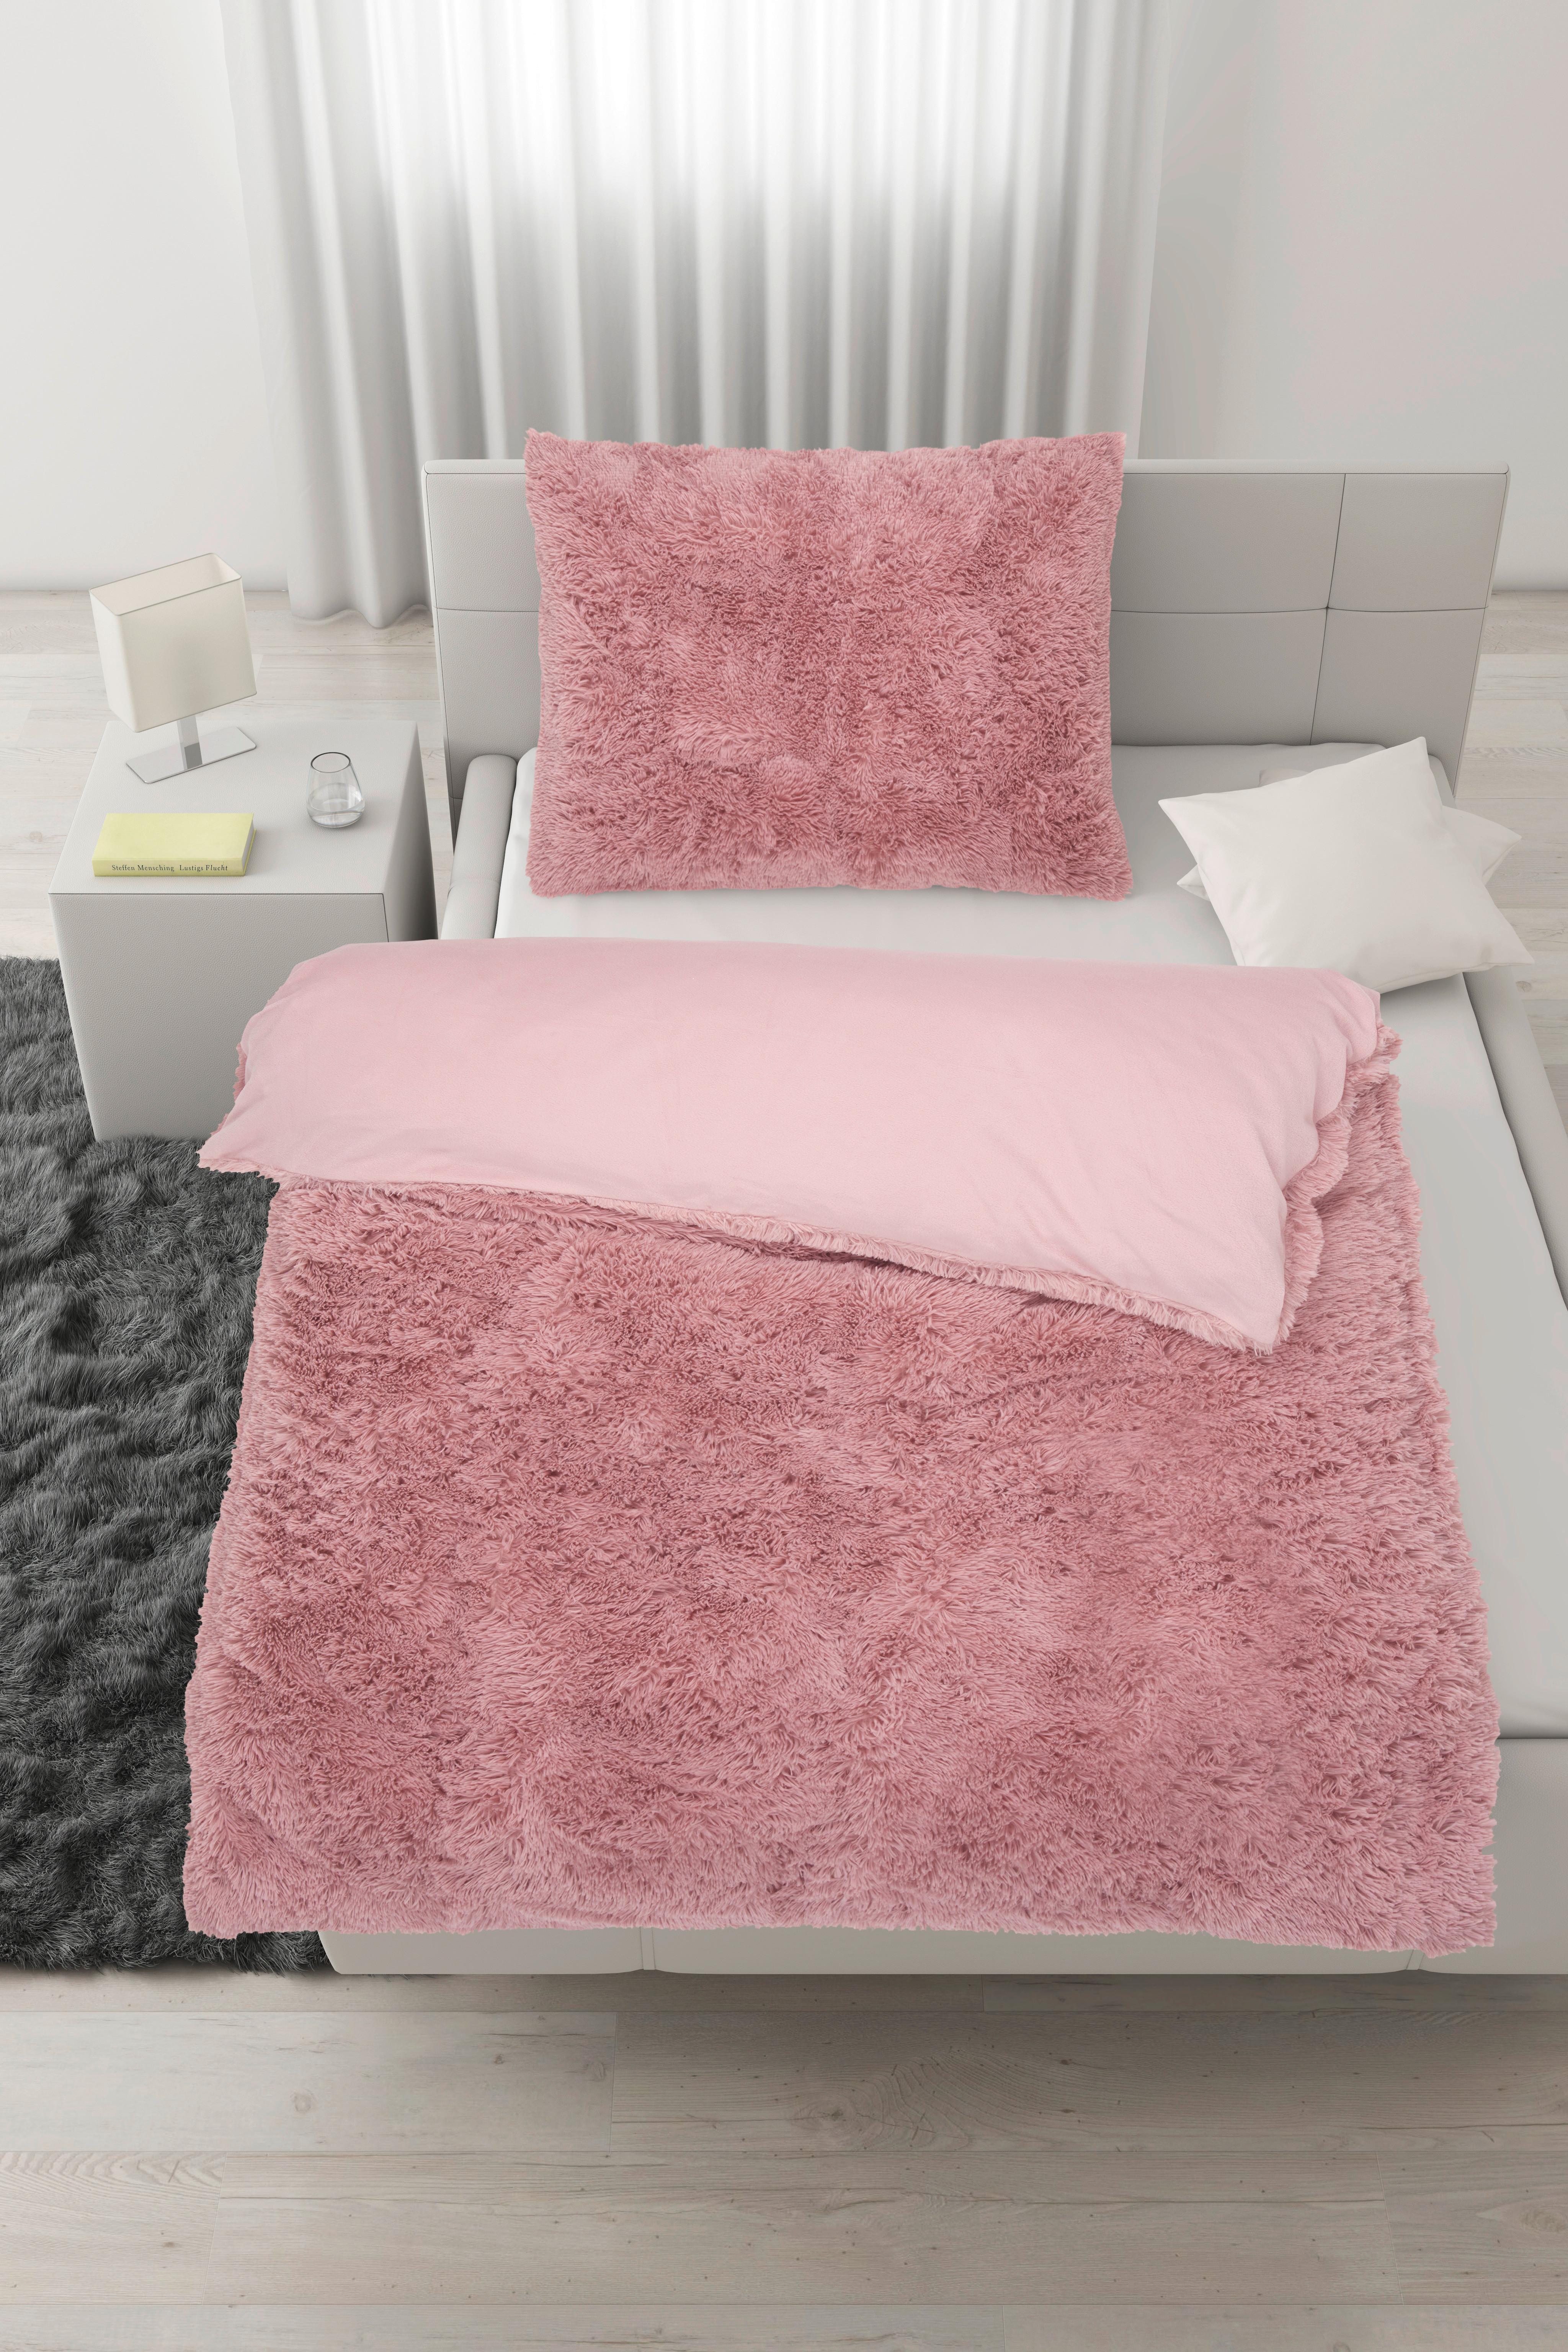 Posteľná Bielizeň Fluffy Wende, 70/90 140/200cm - ružová, textil (140/200cm) - Modern Living